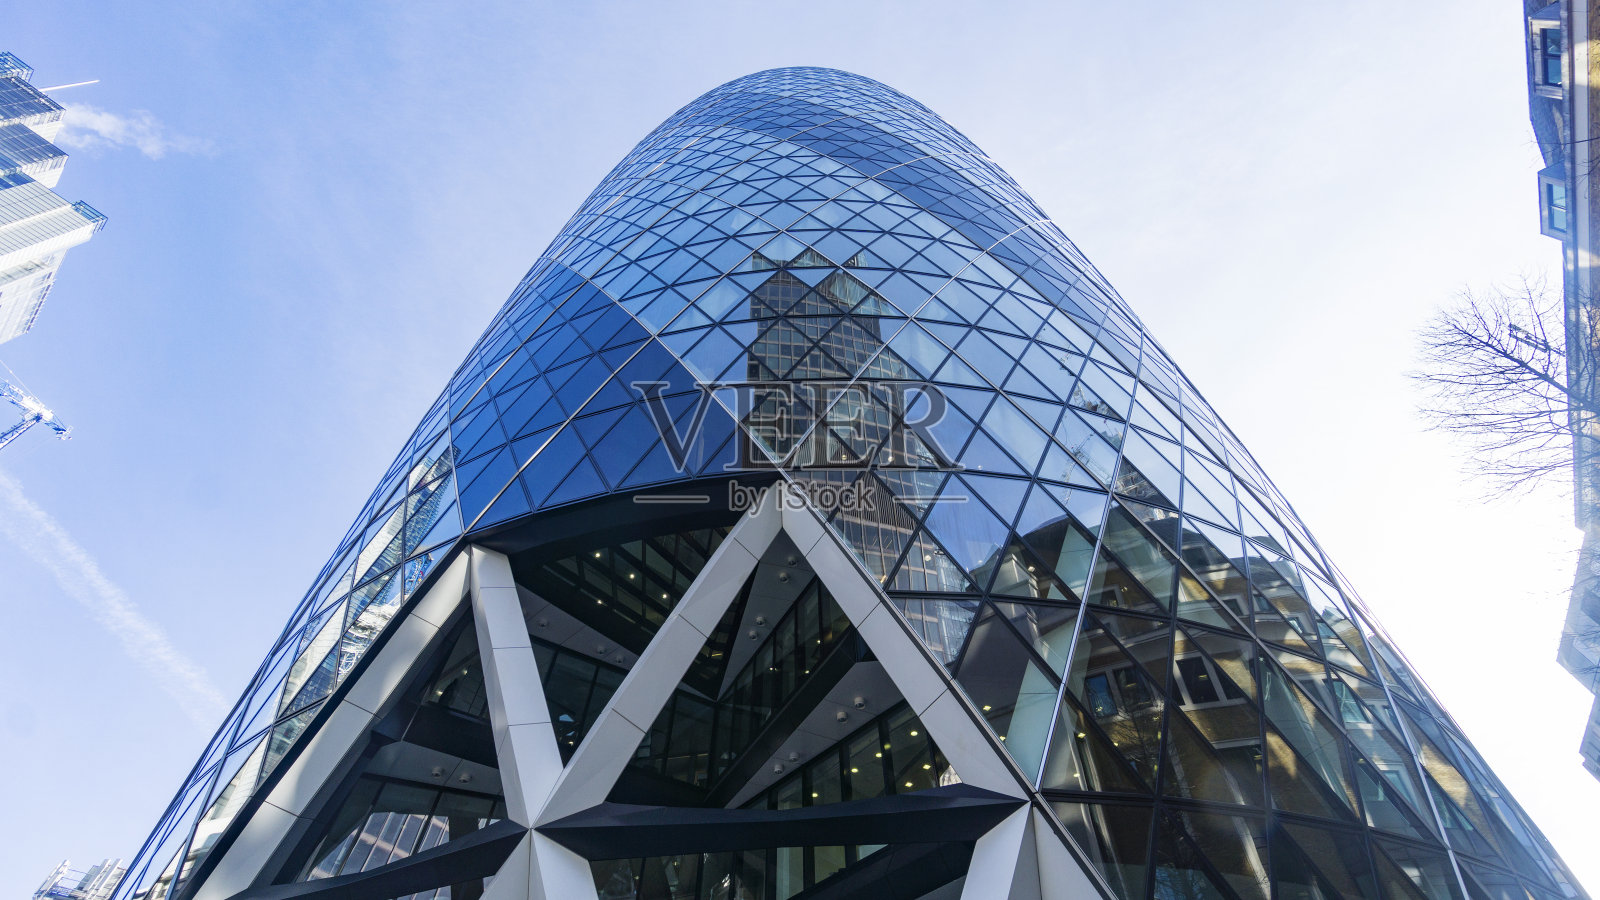 伦敦——2017年3月3日:玻璃幕墙的圣玛丽斧街30号摩天大楼反映了现代建筑和蓝天。英国伦敦照片摄影图片